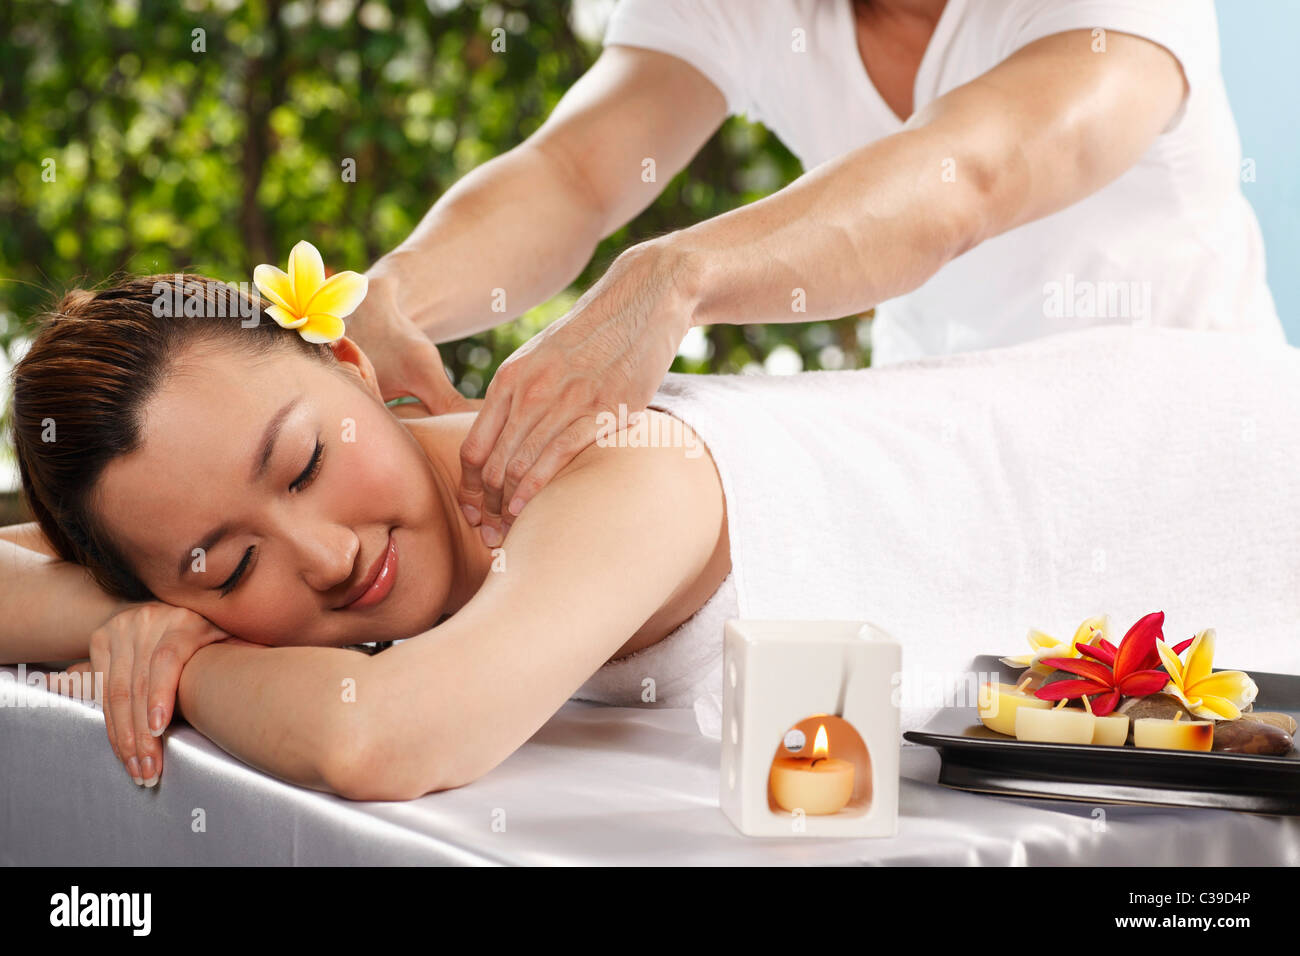 Chinese woman getting a back massage Stock Photo - Alamy